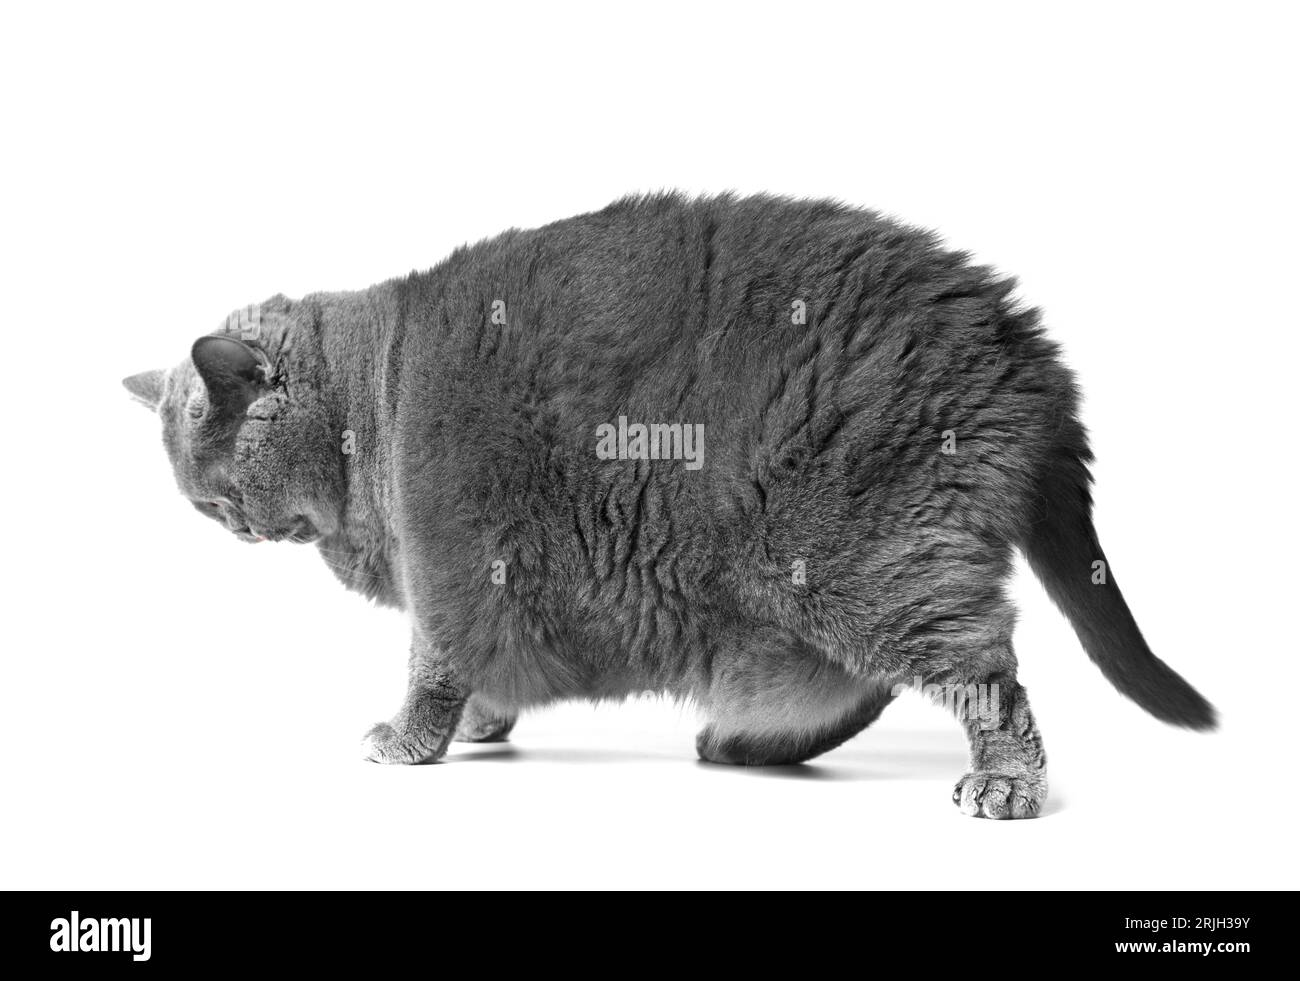 Un gros chat britannique gris avec de grands yeux jaunes se tient devant un fond blanc. Obésité du chat écossais. Banque D'Images